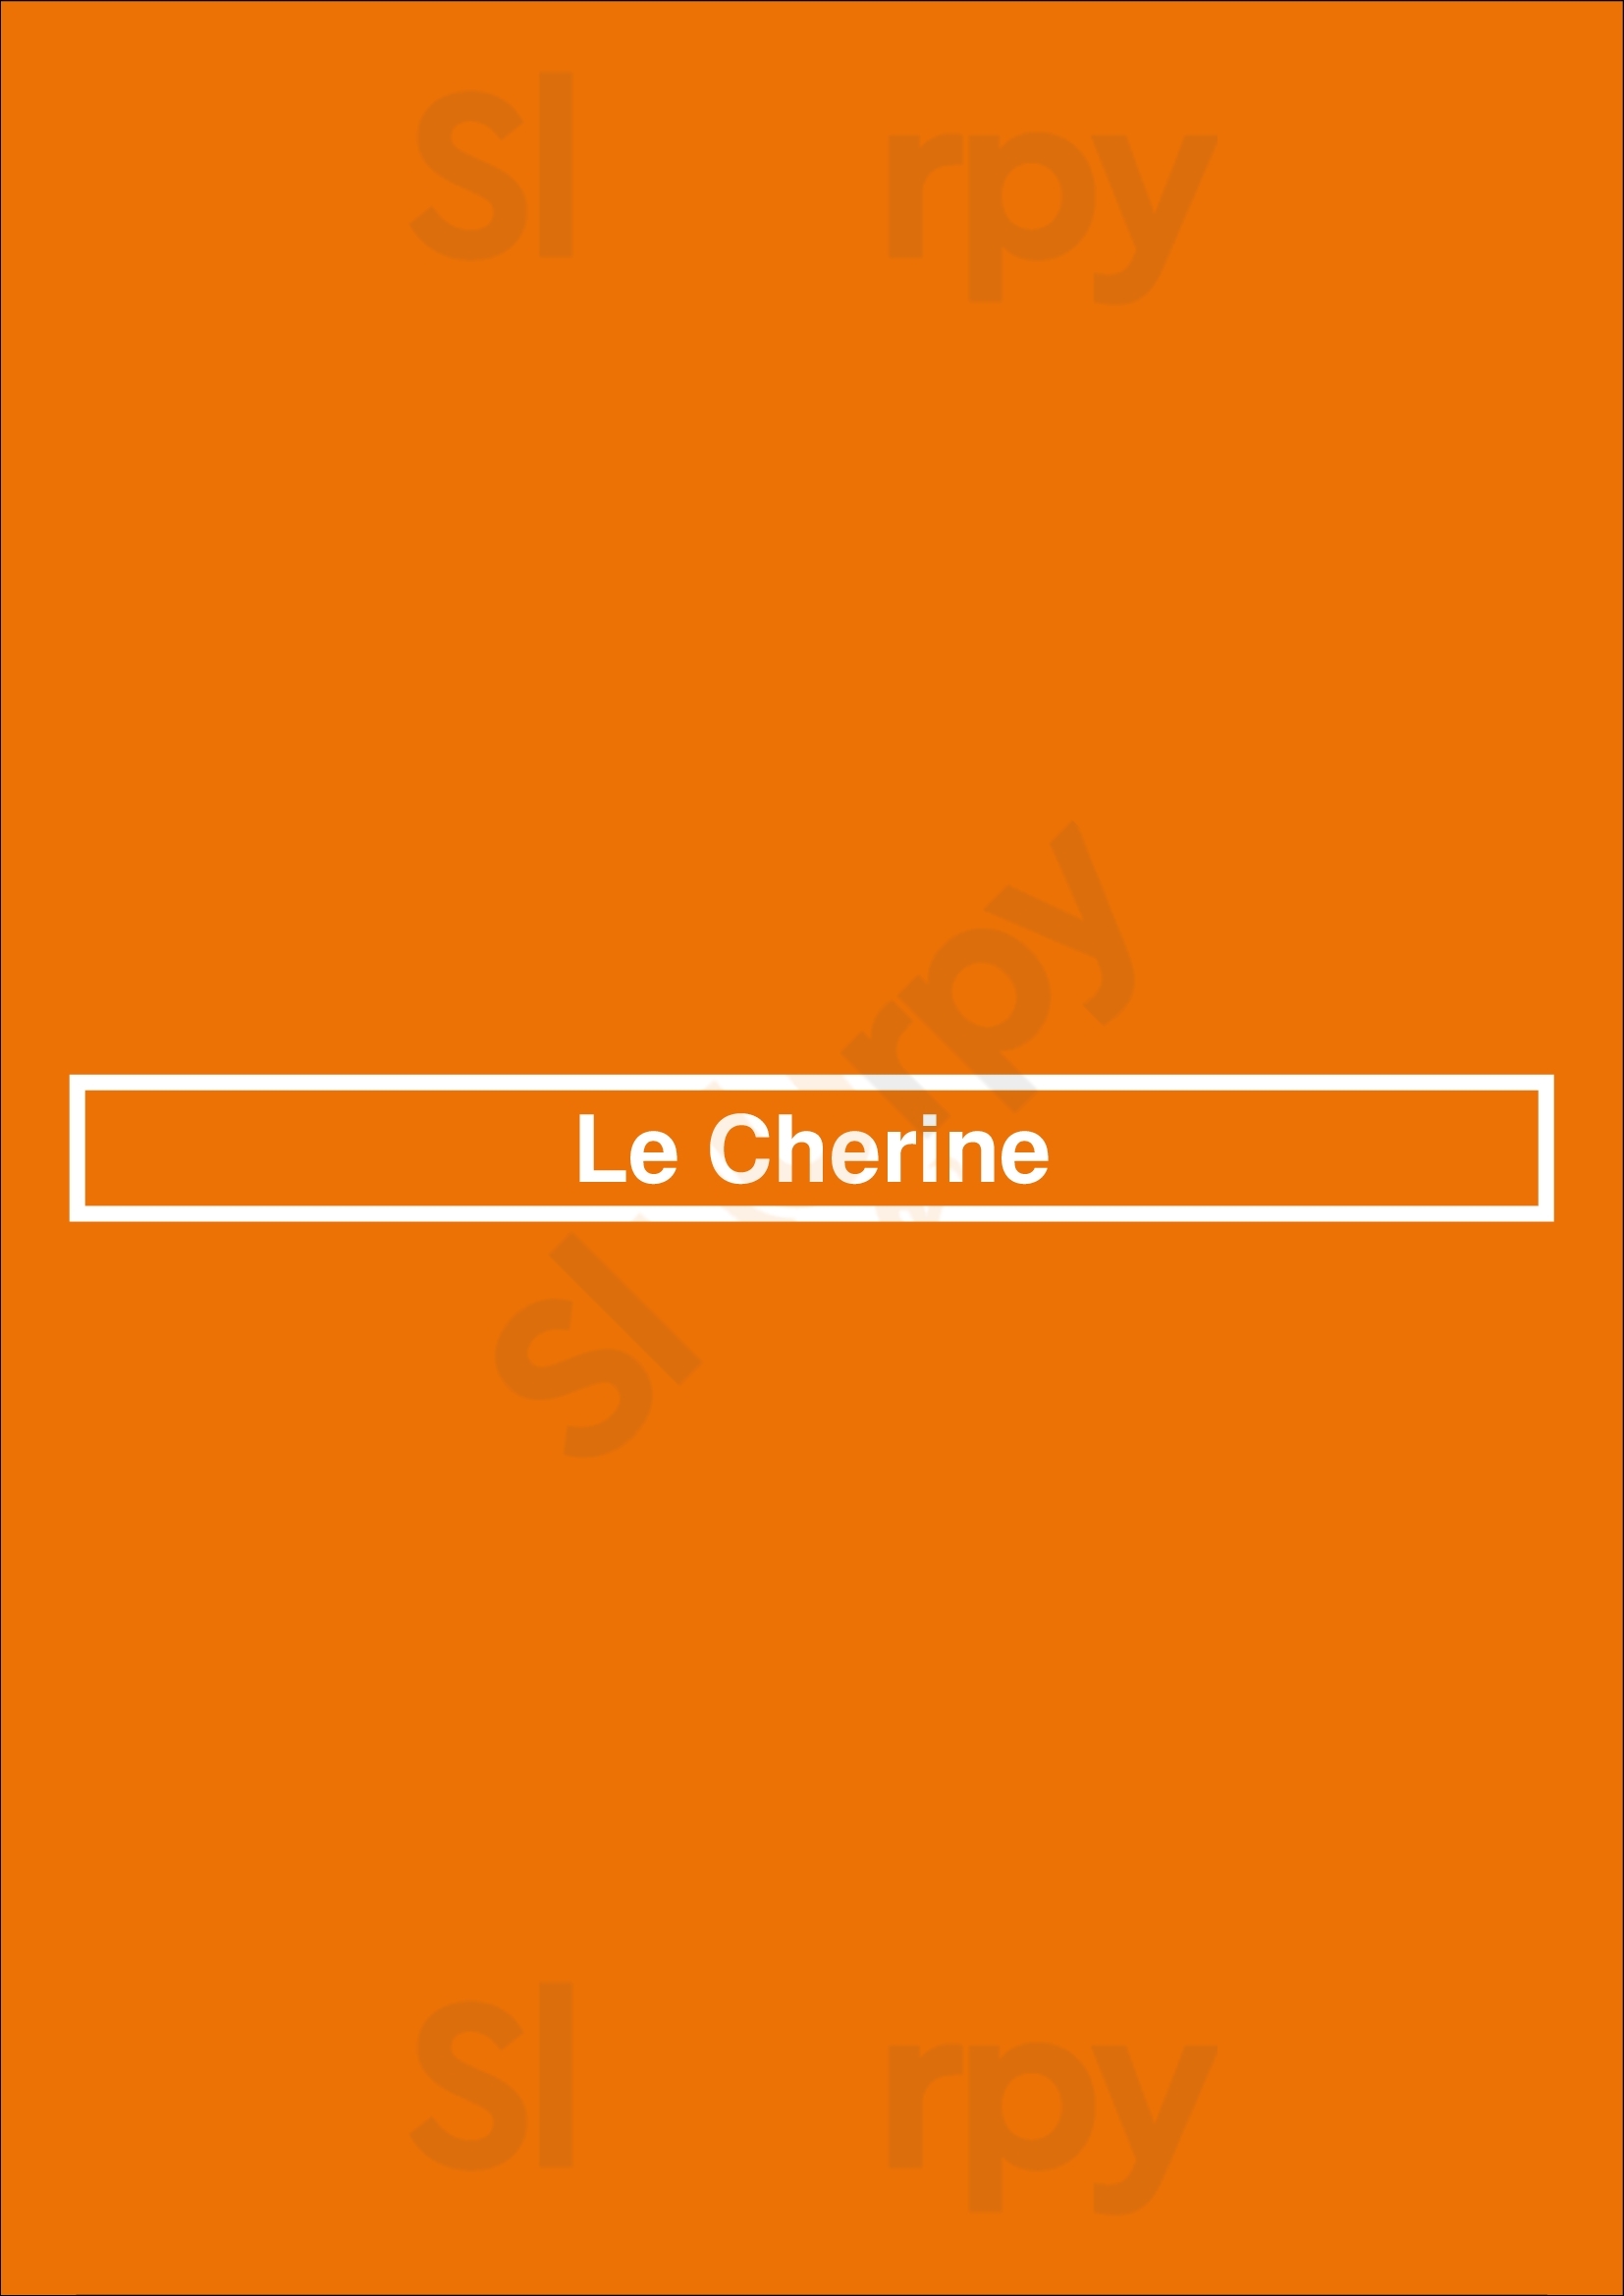 Le Cherine Paris Menu - 1